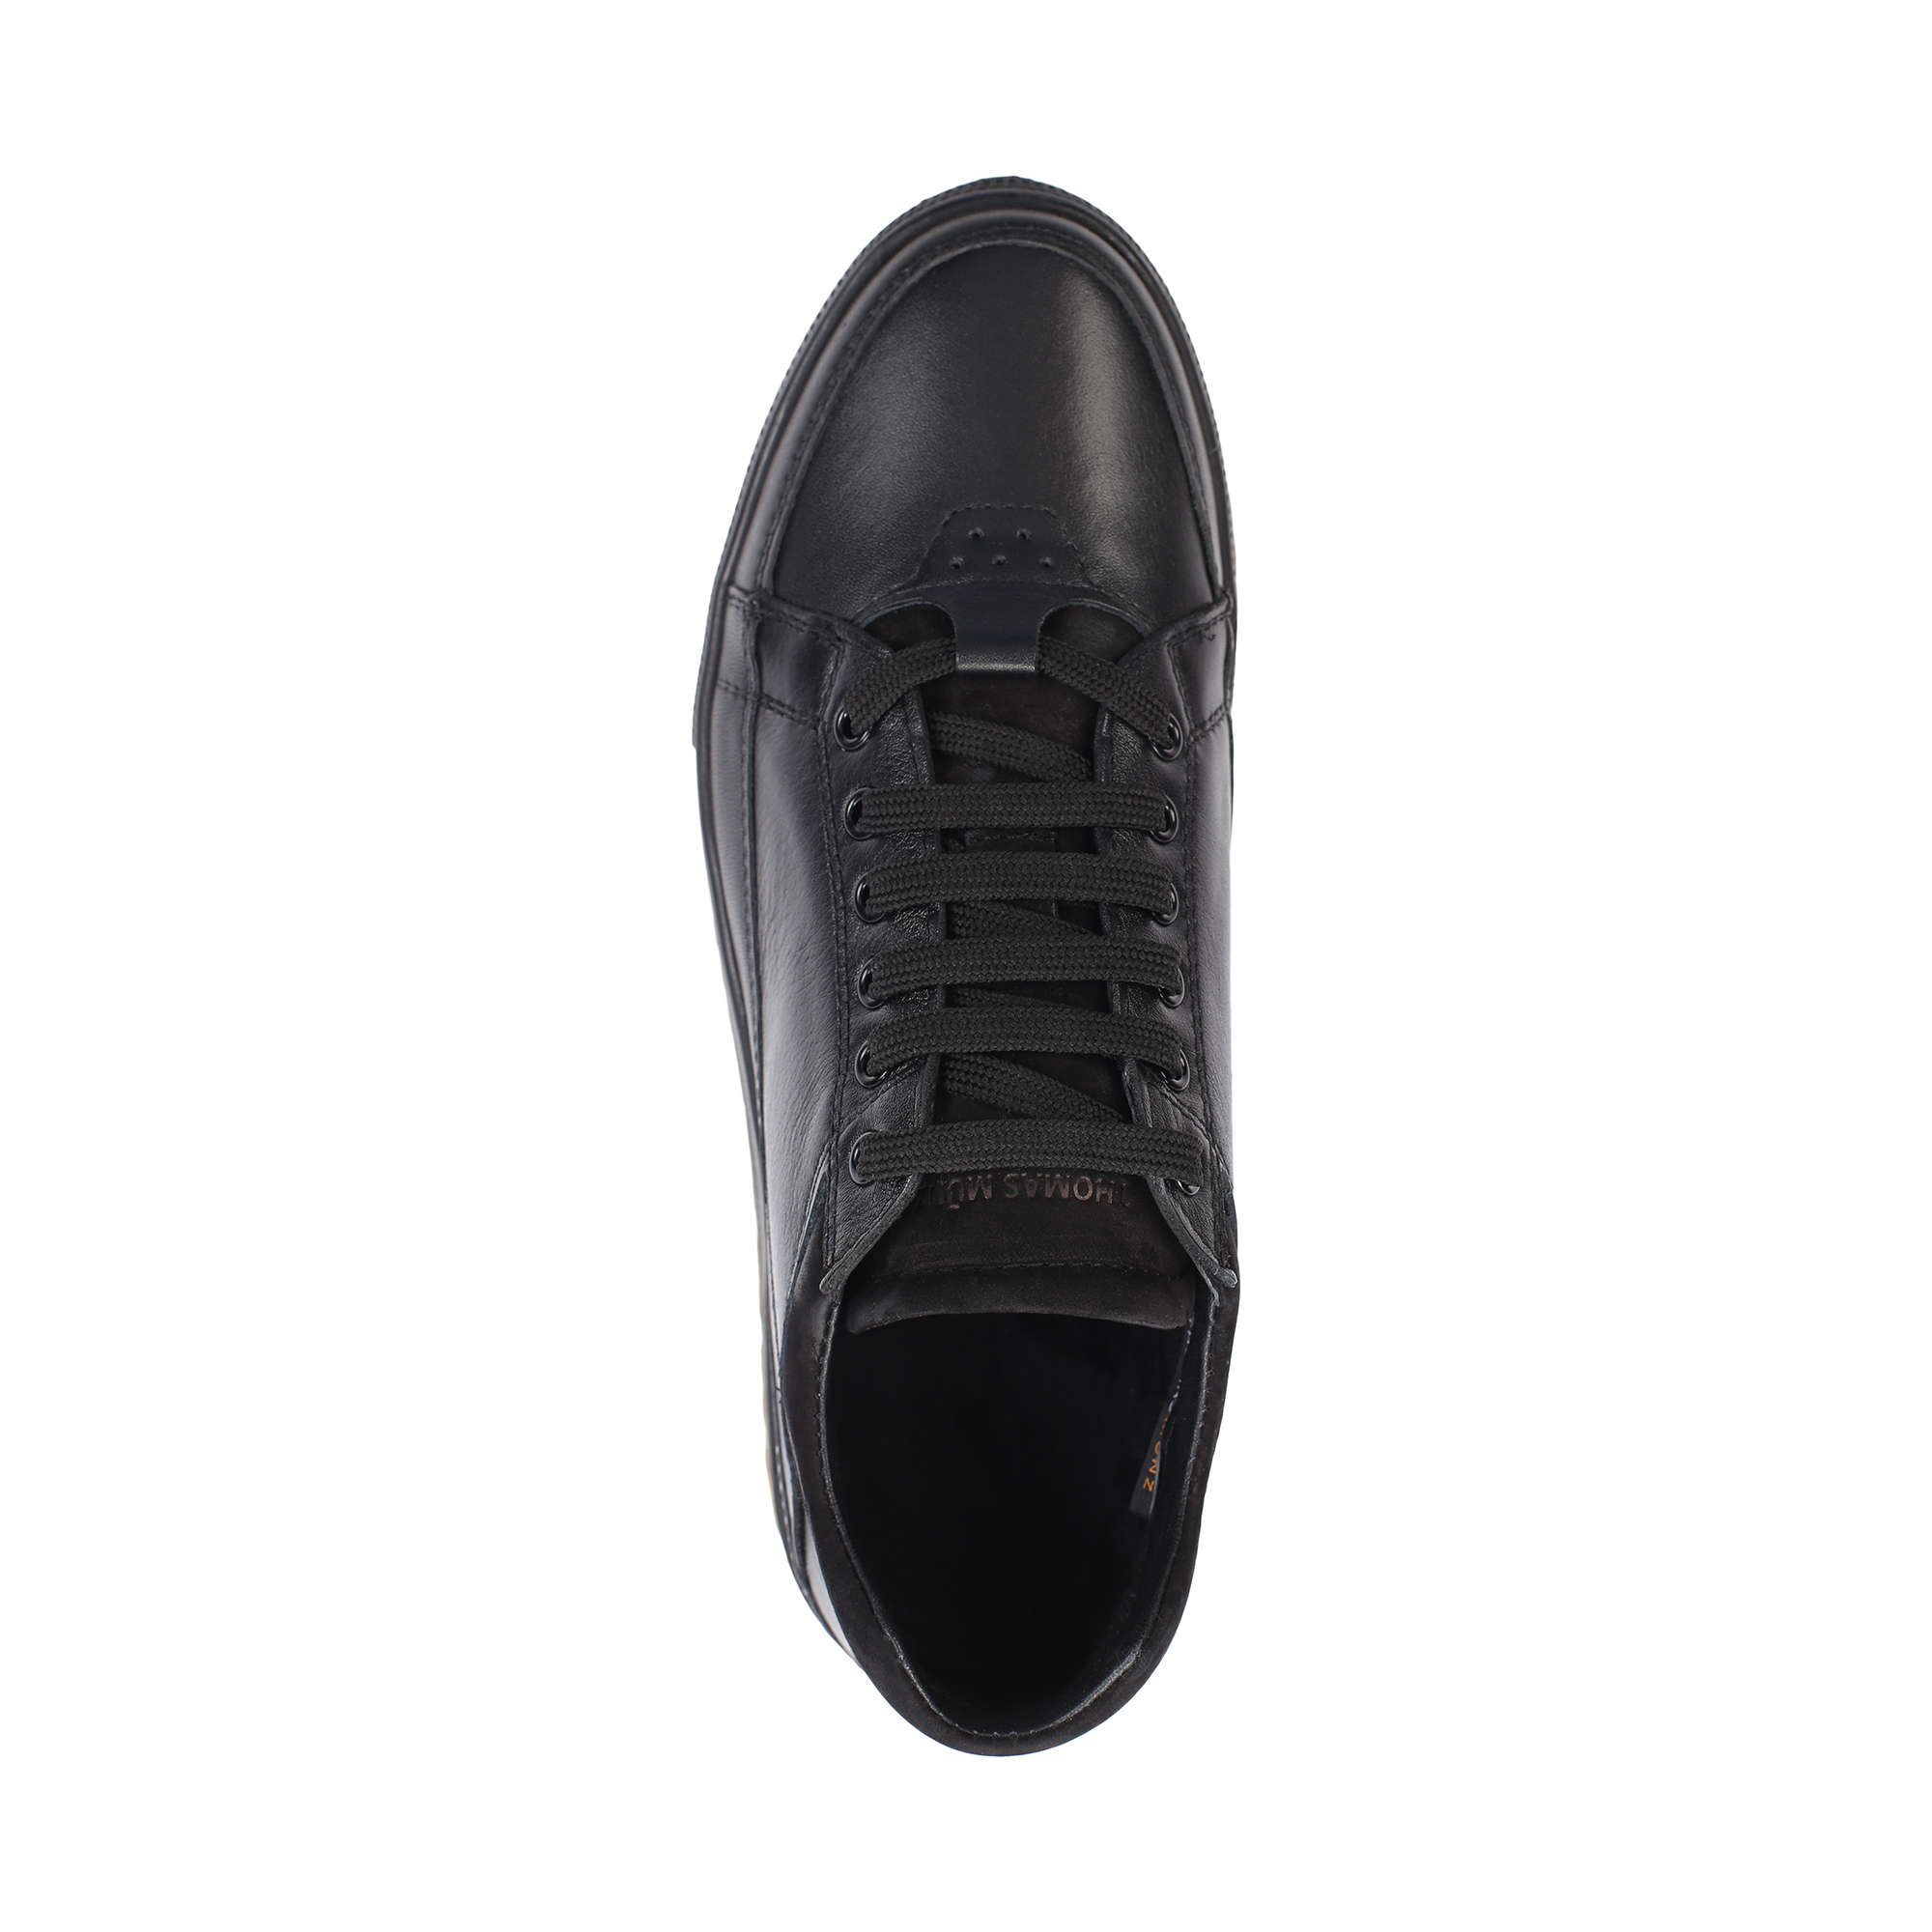 Туфли/полуботинки Thomas Munz 331-088B-2102, цвет черный, размер 43 - фото 5